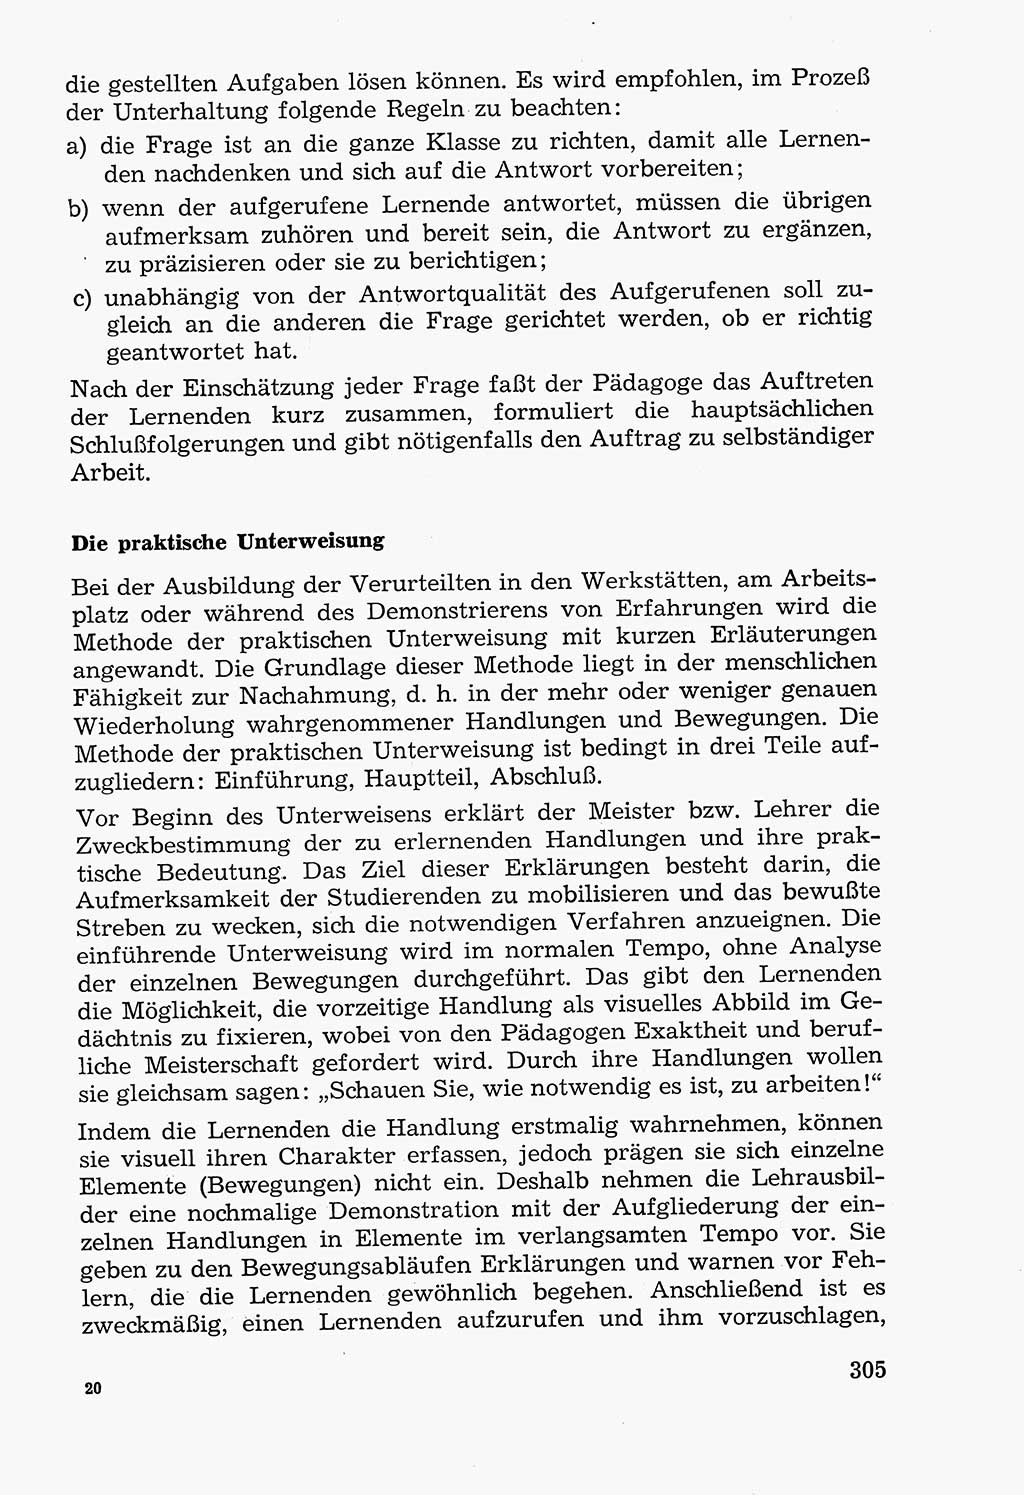 Lehrbuch der Strafvollzugspädagogik [Deutsche Demokratische Republik (DDR)] 1969, Seite 305 (Lb. SV-Pd. DDR 1969, S. 305)